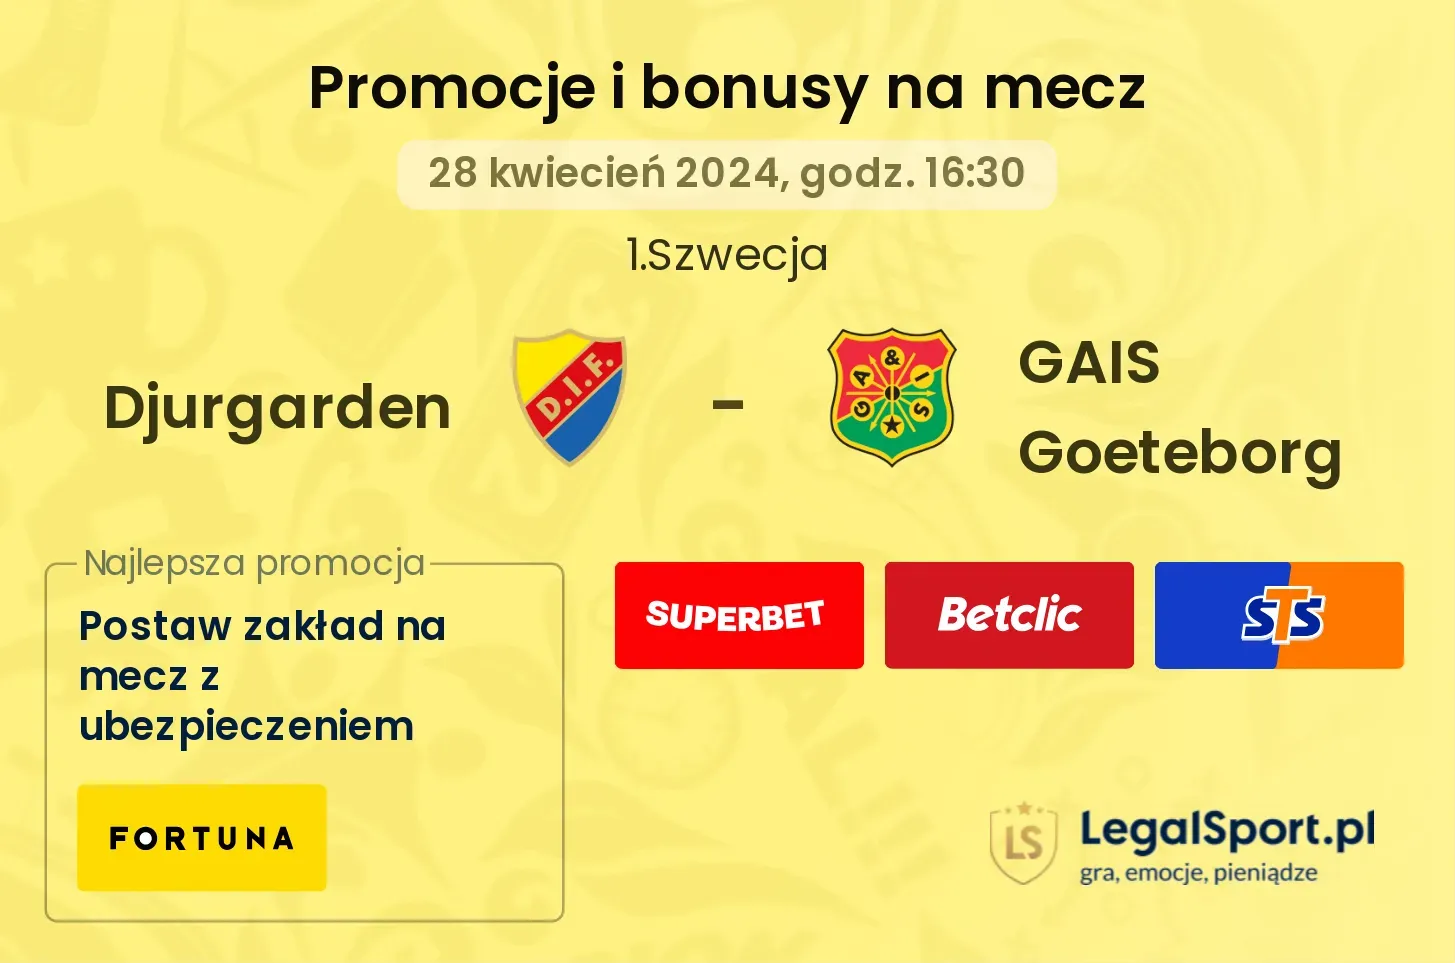 Djurgarden - GAIS Goeteborg promocje bonusy na mecz